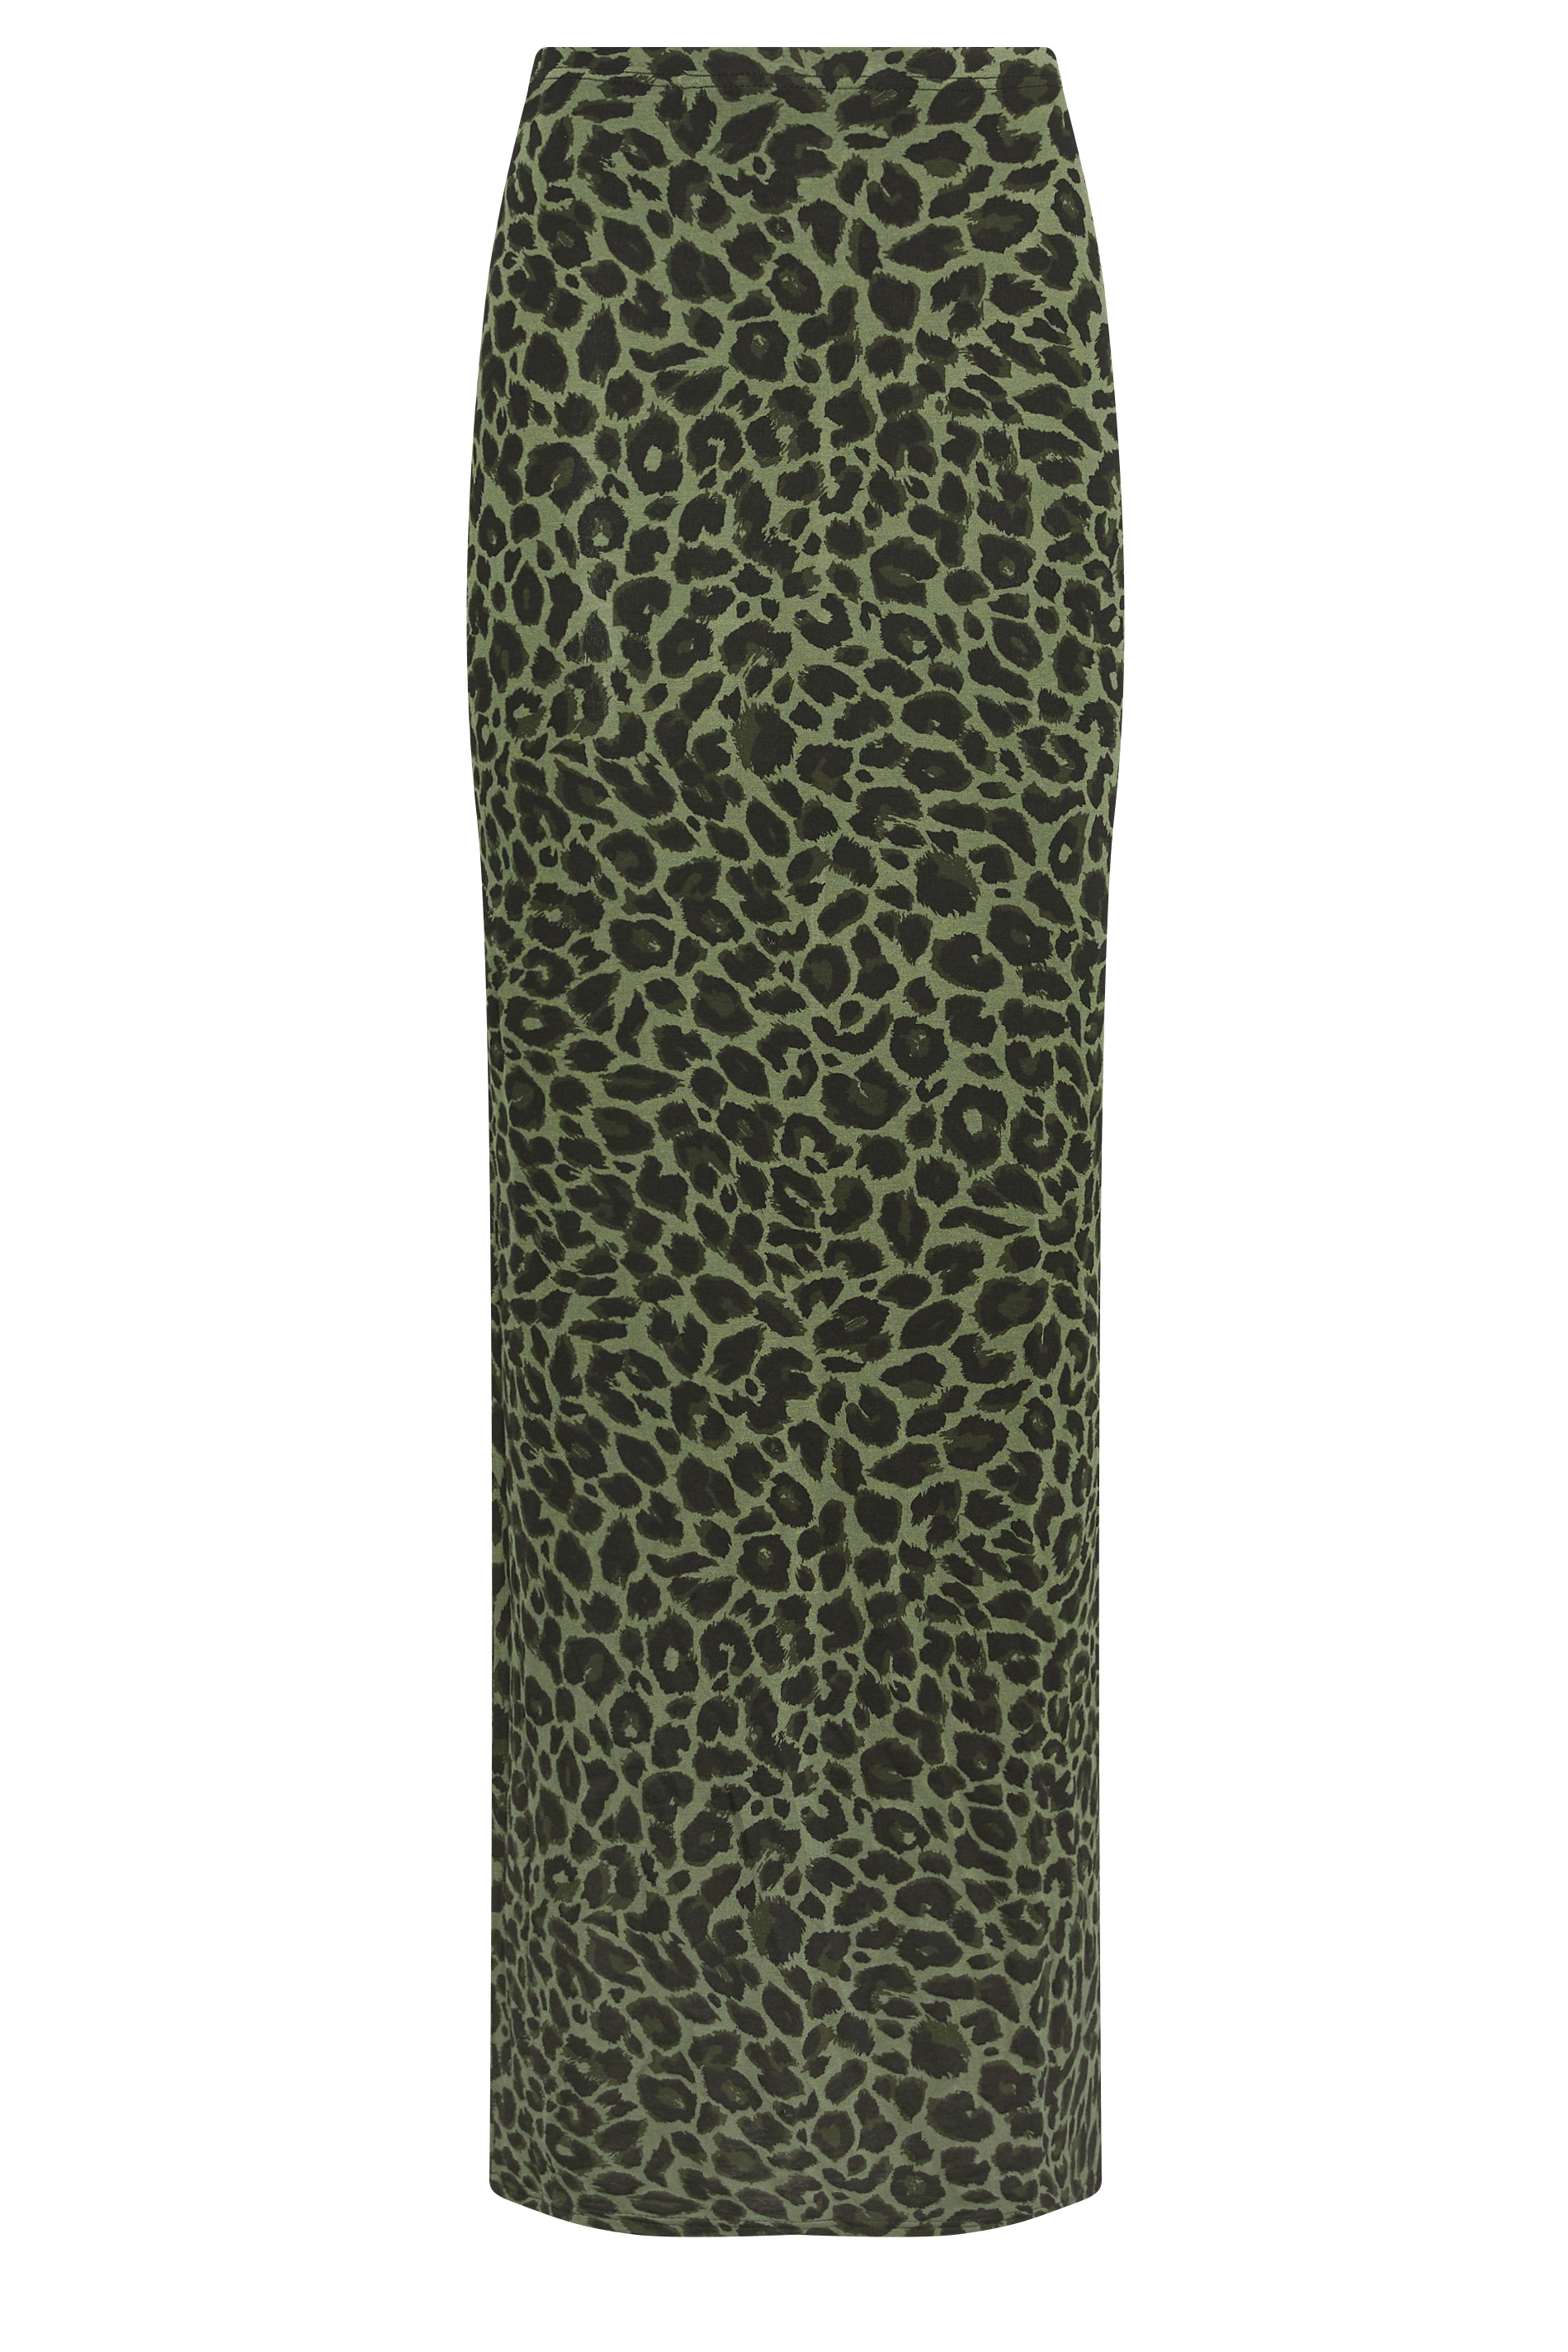 LTS Tall Khaki Green Leopard Print Maxi Skirt | Long Tall Sally